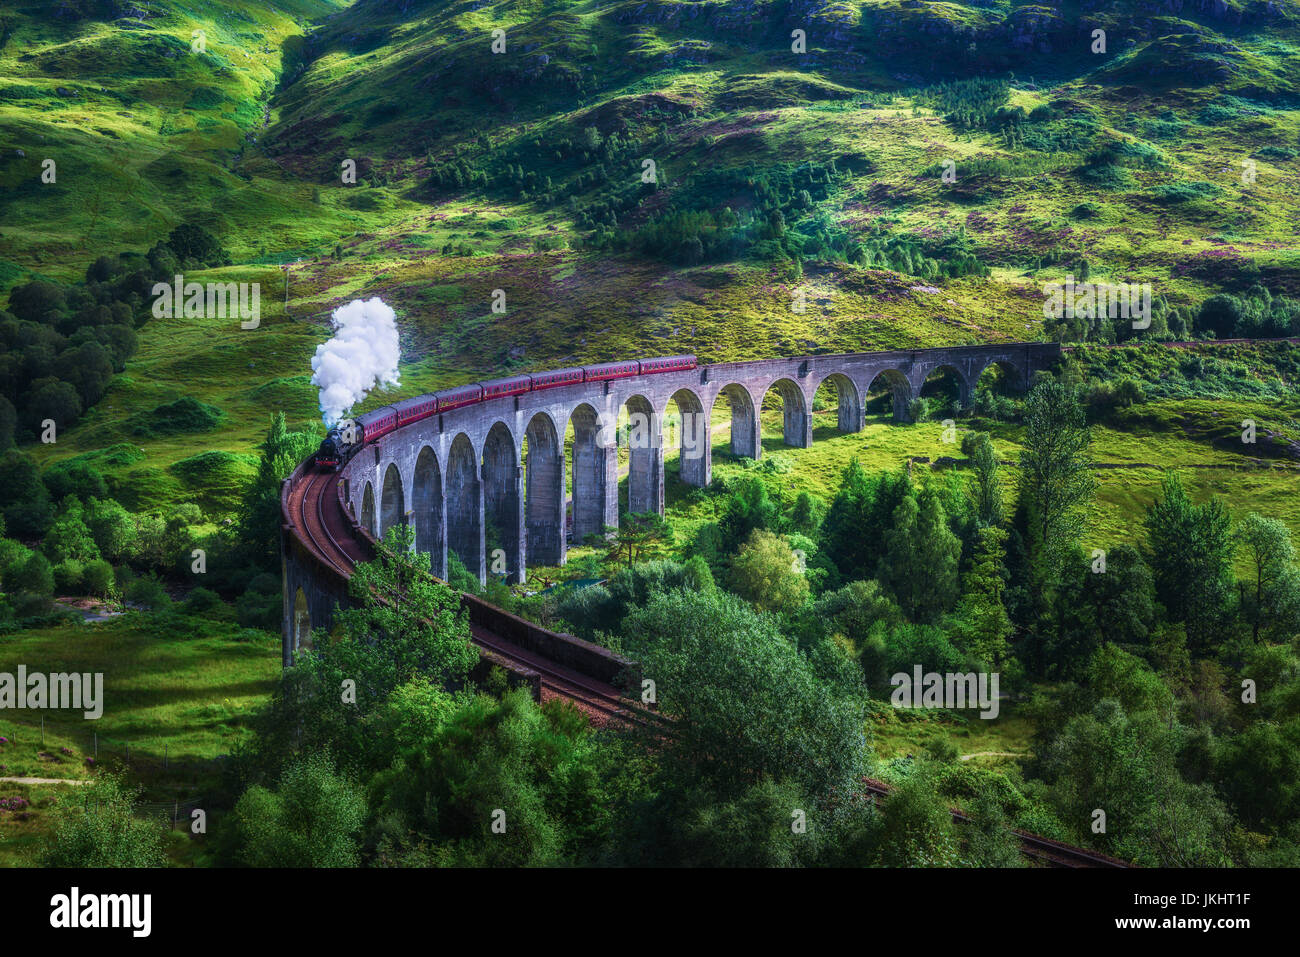 Viaduc de Glenfinnan en Ecosse avec le train à vapeur Jacobite passant au-dessus. Style vintage artistique de la transformation. Banque D'Images